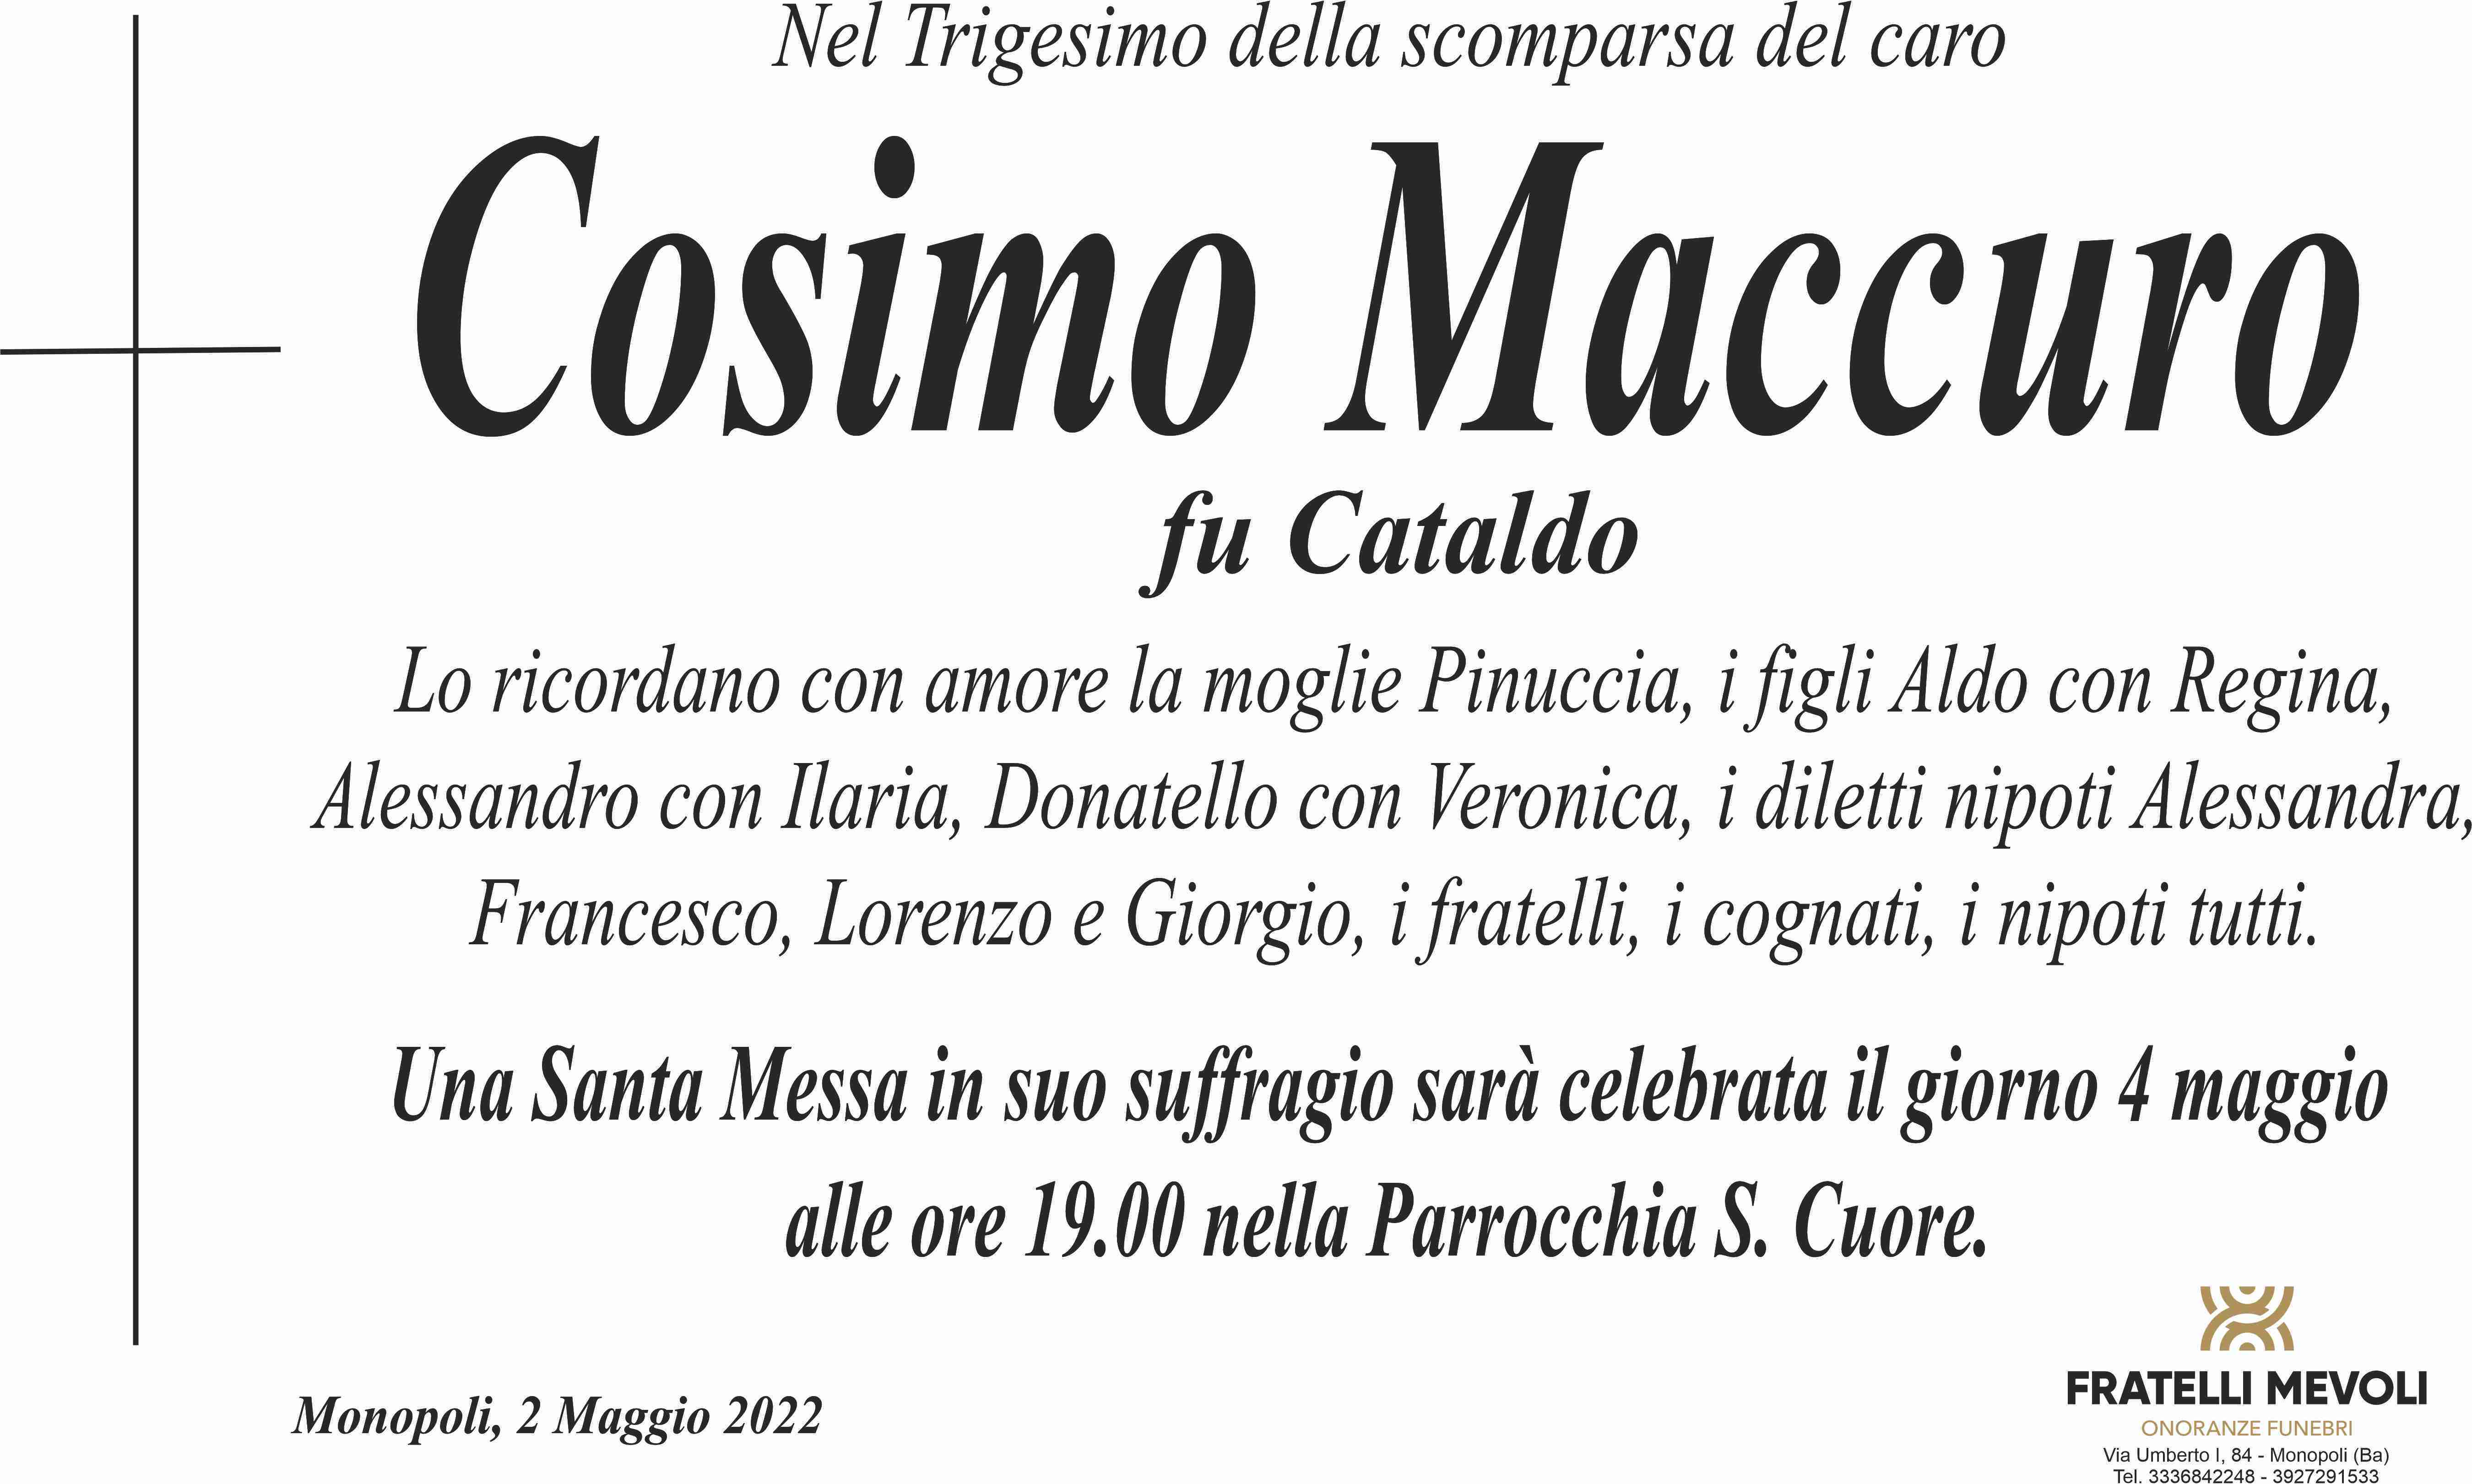 Cosimo Maccuro